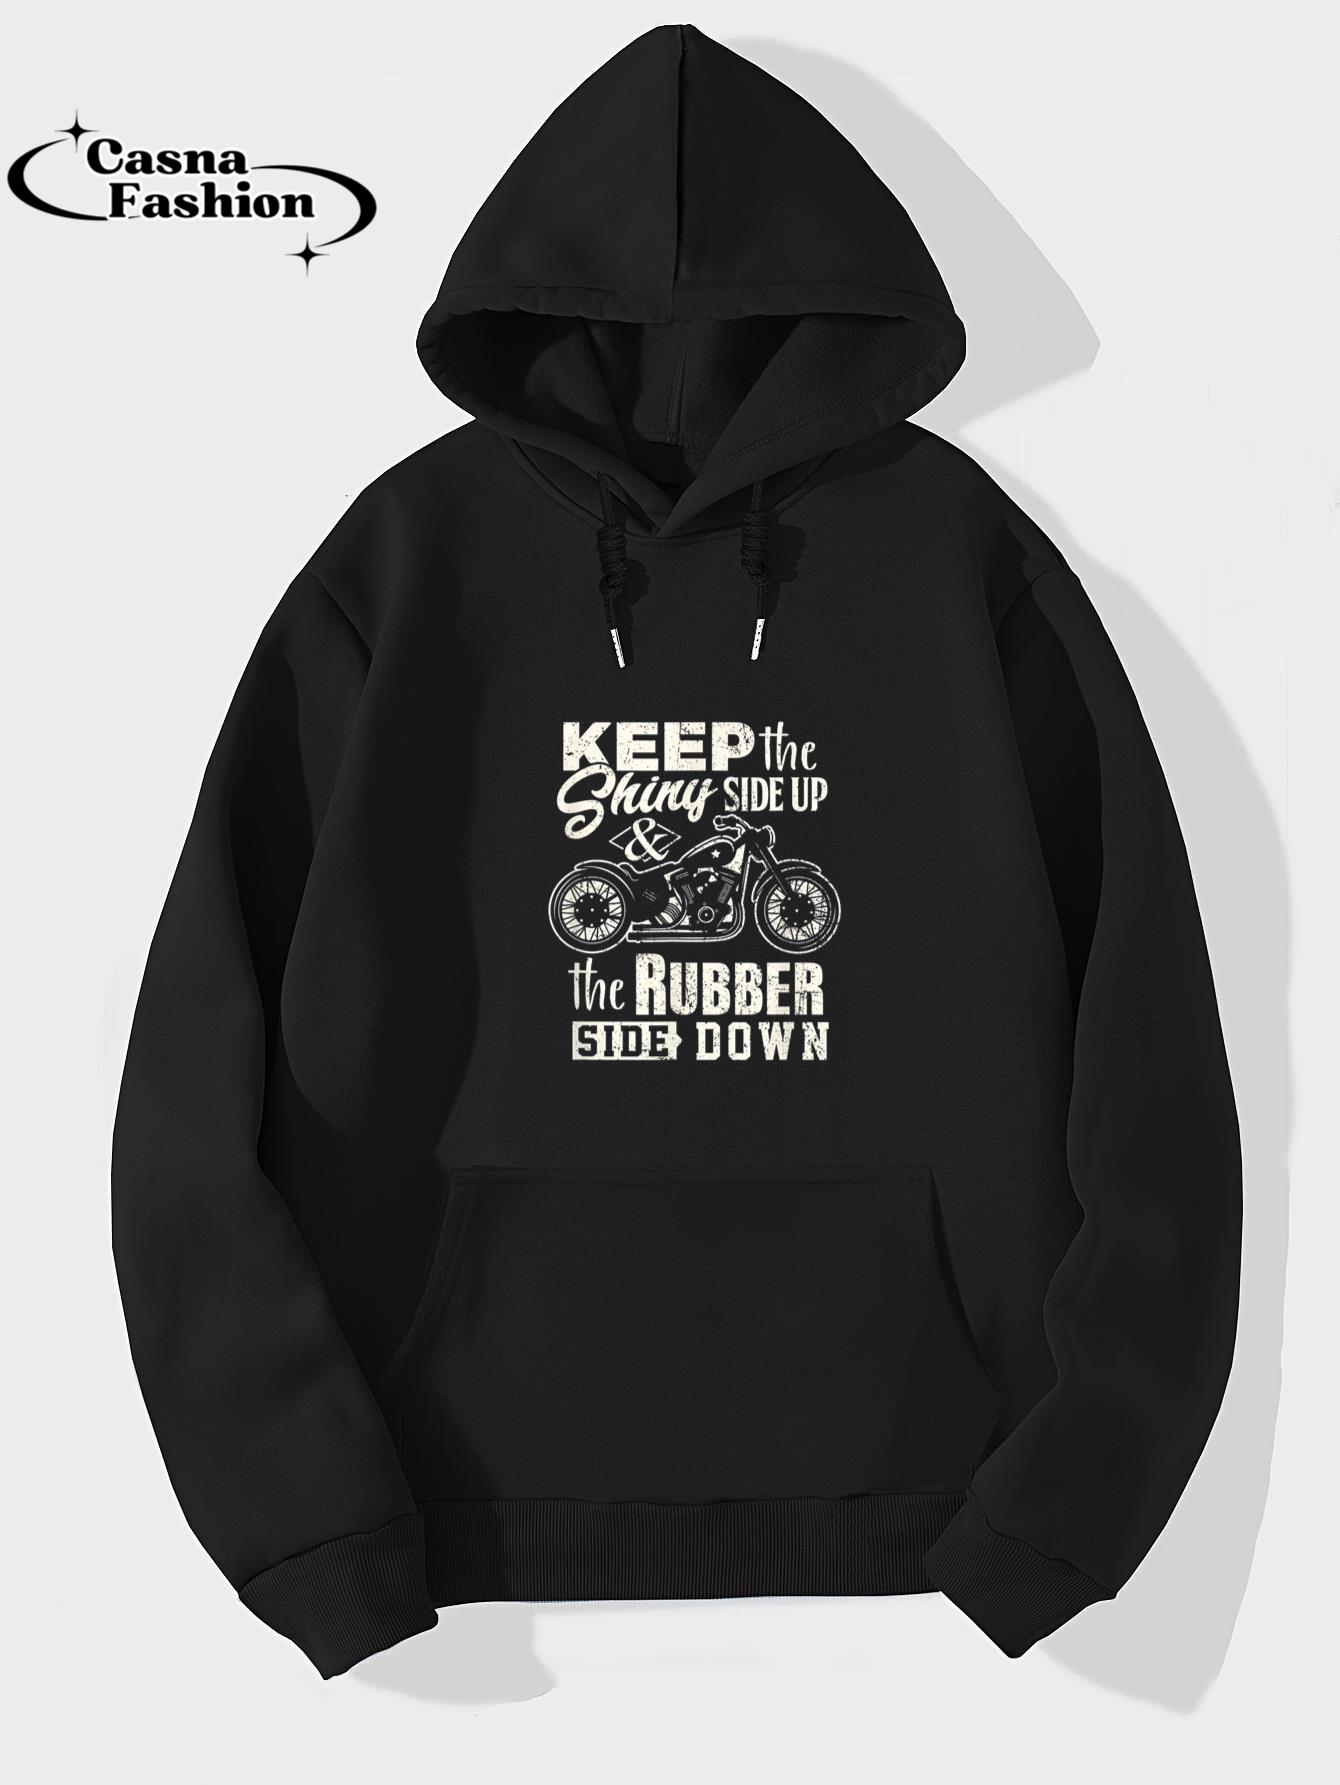 casnafashion_Hoodie_Vintage Motorcycle rider tip for biker shirt T-Shirt_hoodie_black hoodie